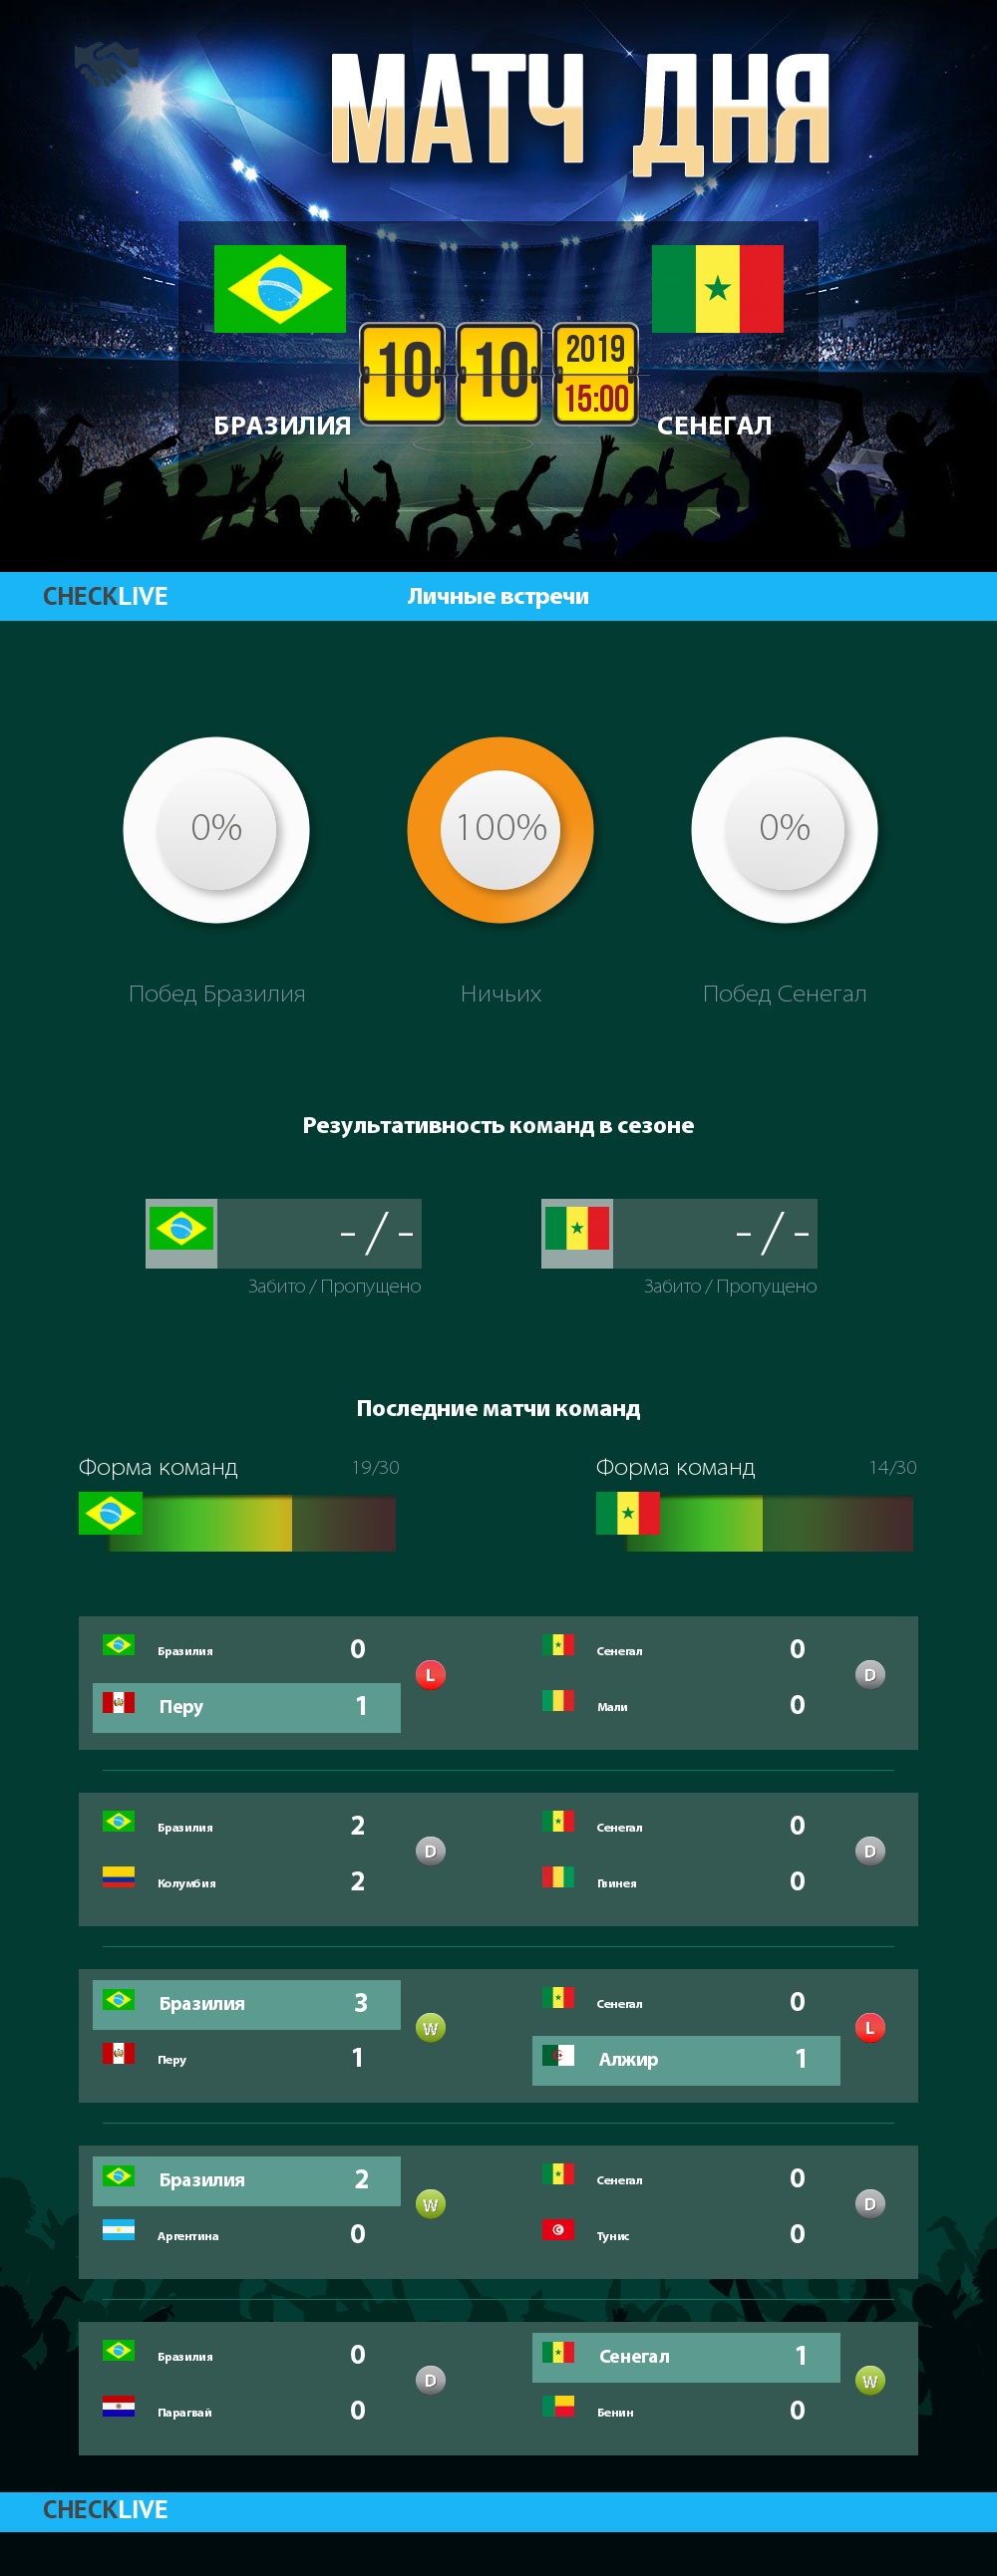 Инфографика Бразилия и Сенегал матч дня 10.10.2019